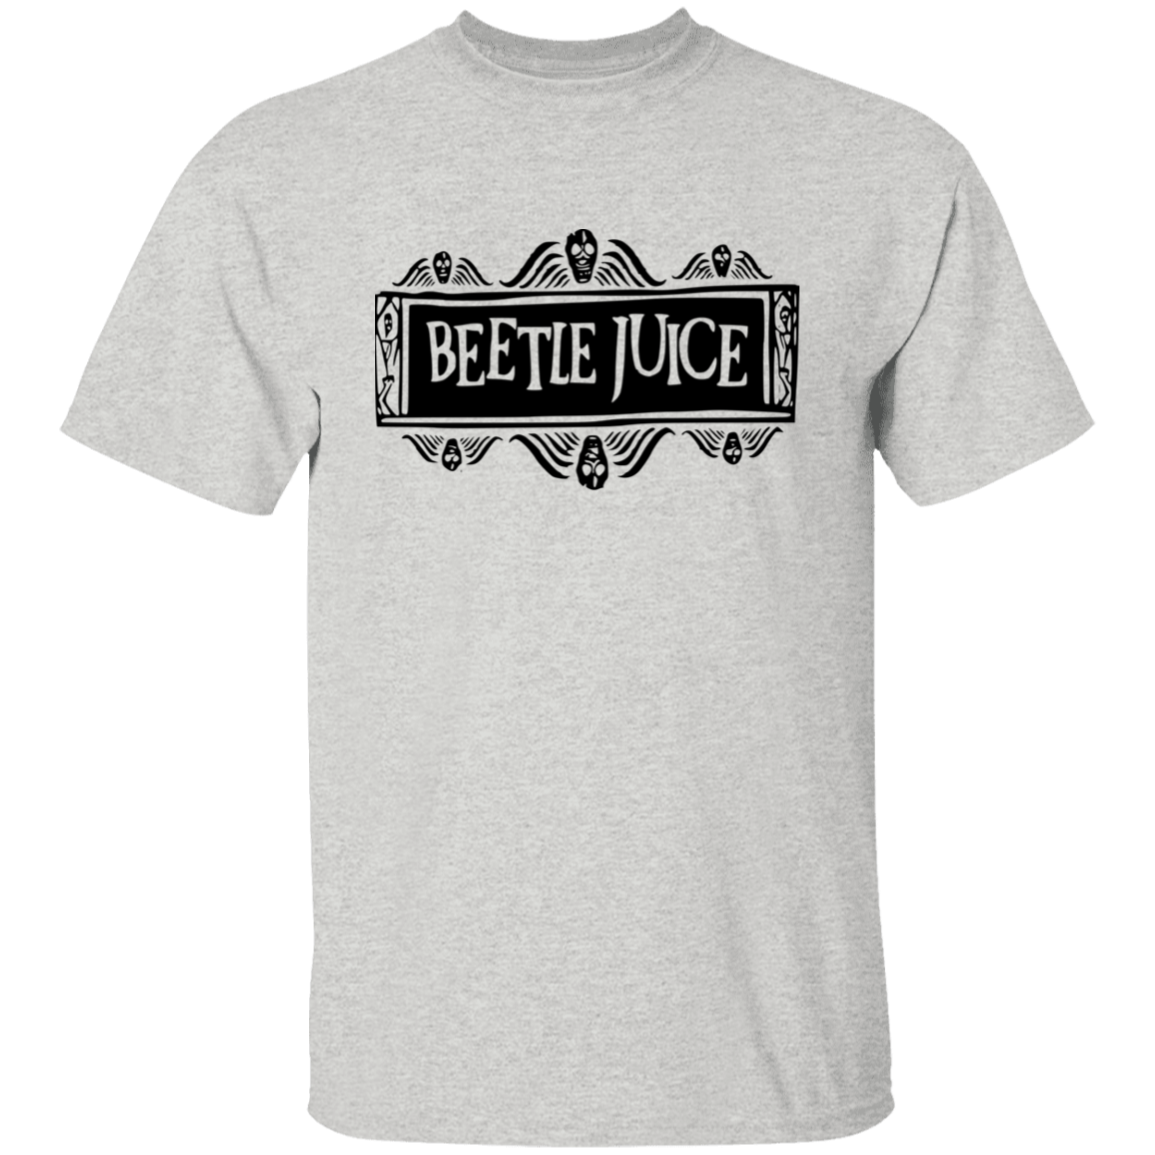 Beetlejuice 5.3 oz. T-Shirt